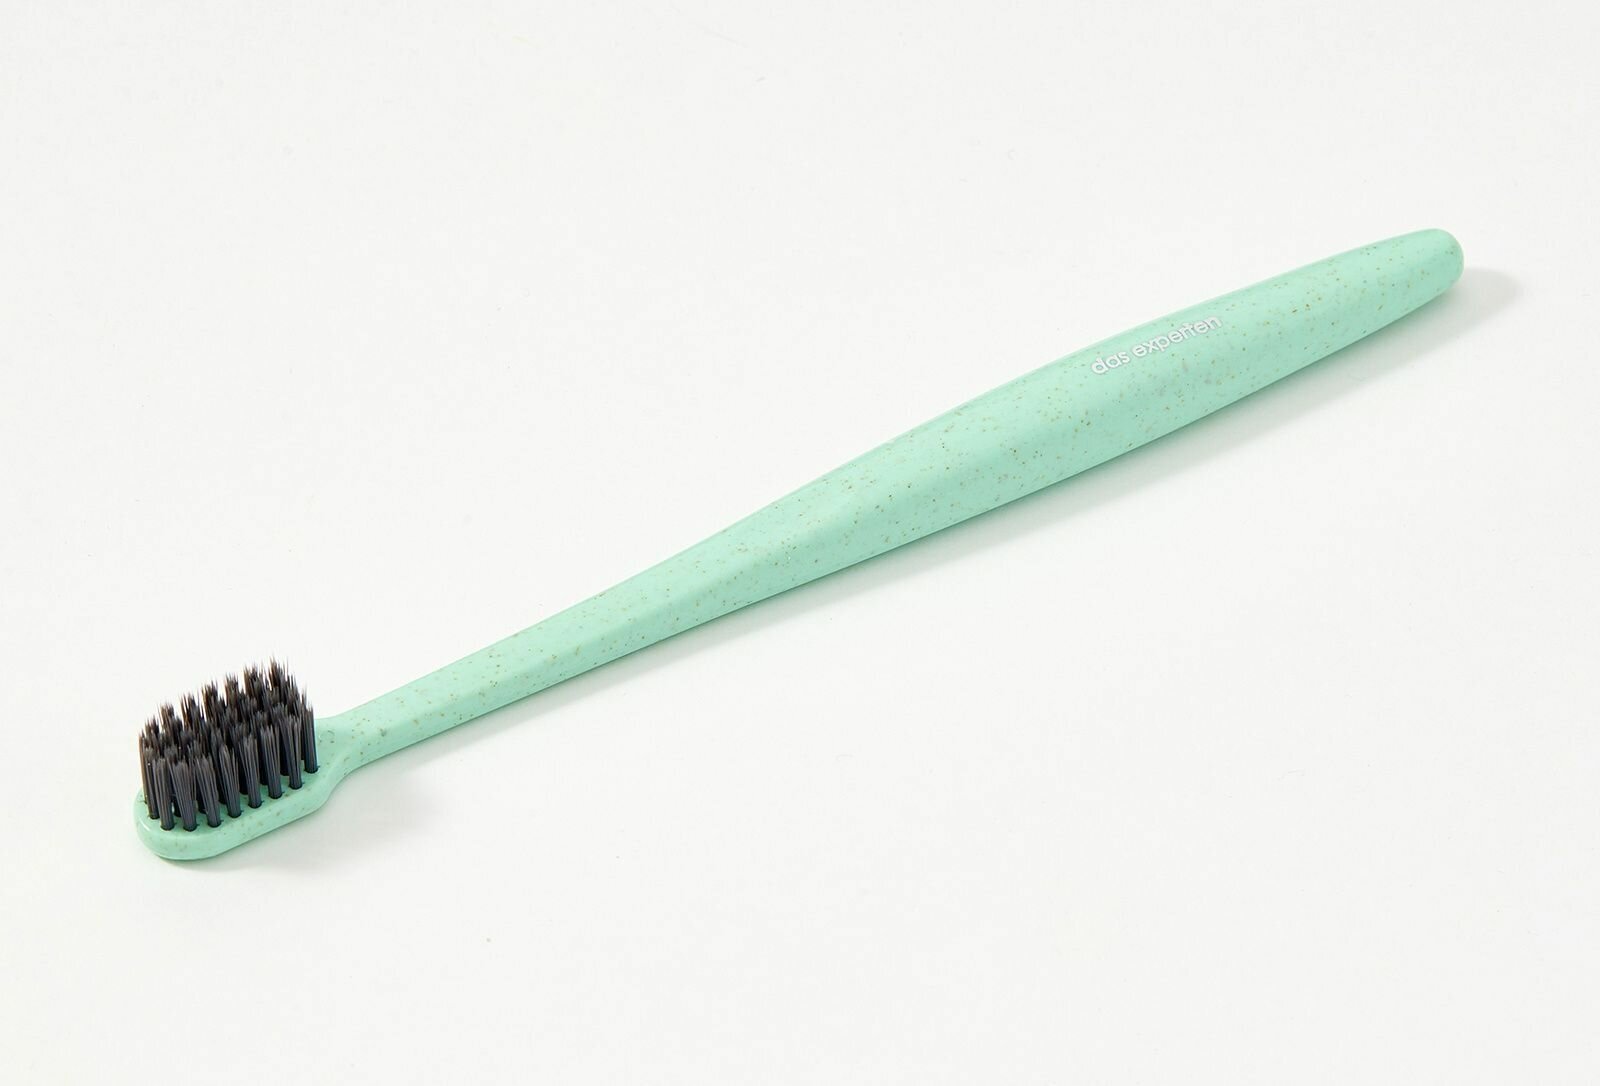 Биоразлагаемая зубная щетка Das Experten BIO с напылением из бамбукового угля для здоровья десен